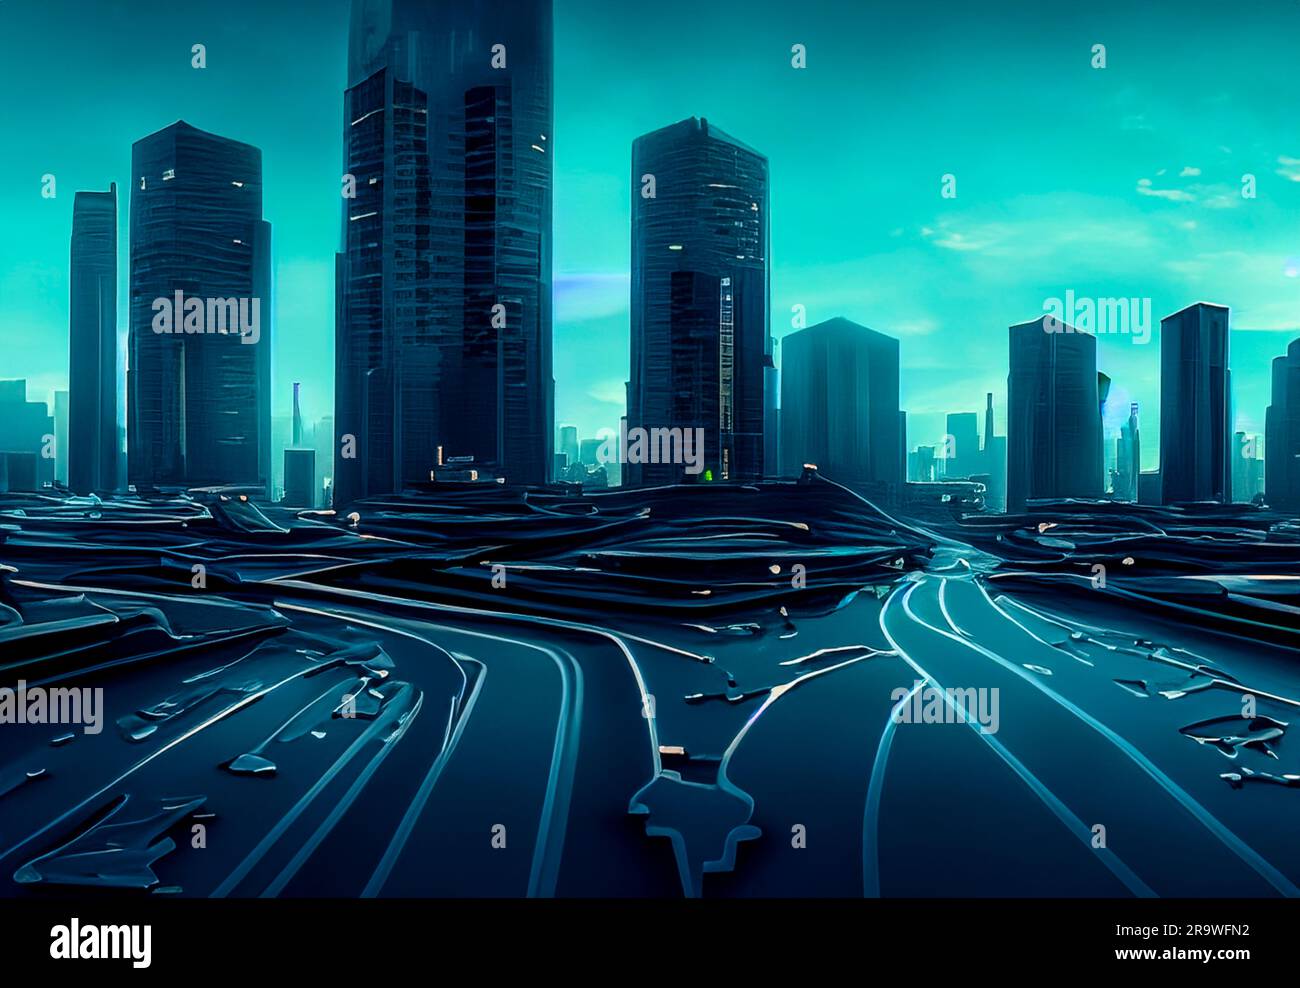 Beautiful Cyberpunk Cityscape, Glitchy Animation style, Cyberpunk Wallpaper/Background, Stock Illustration